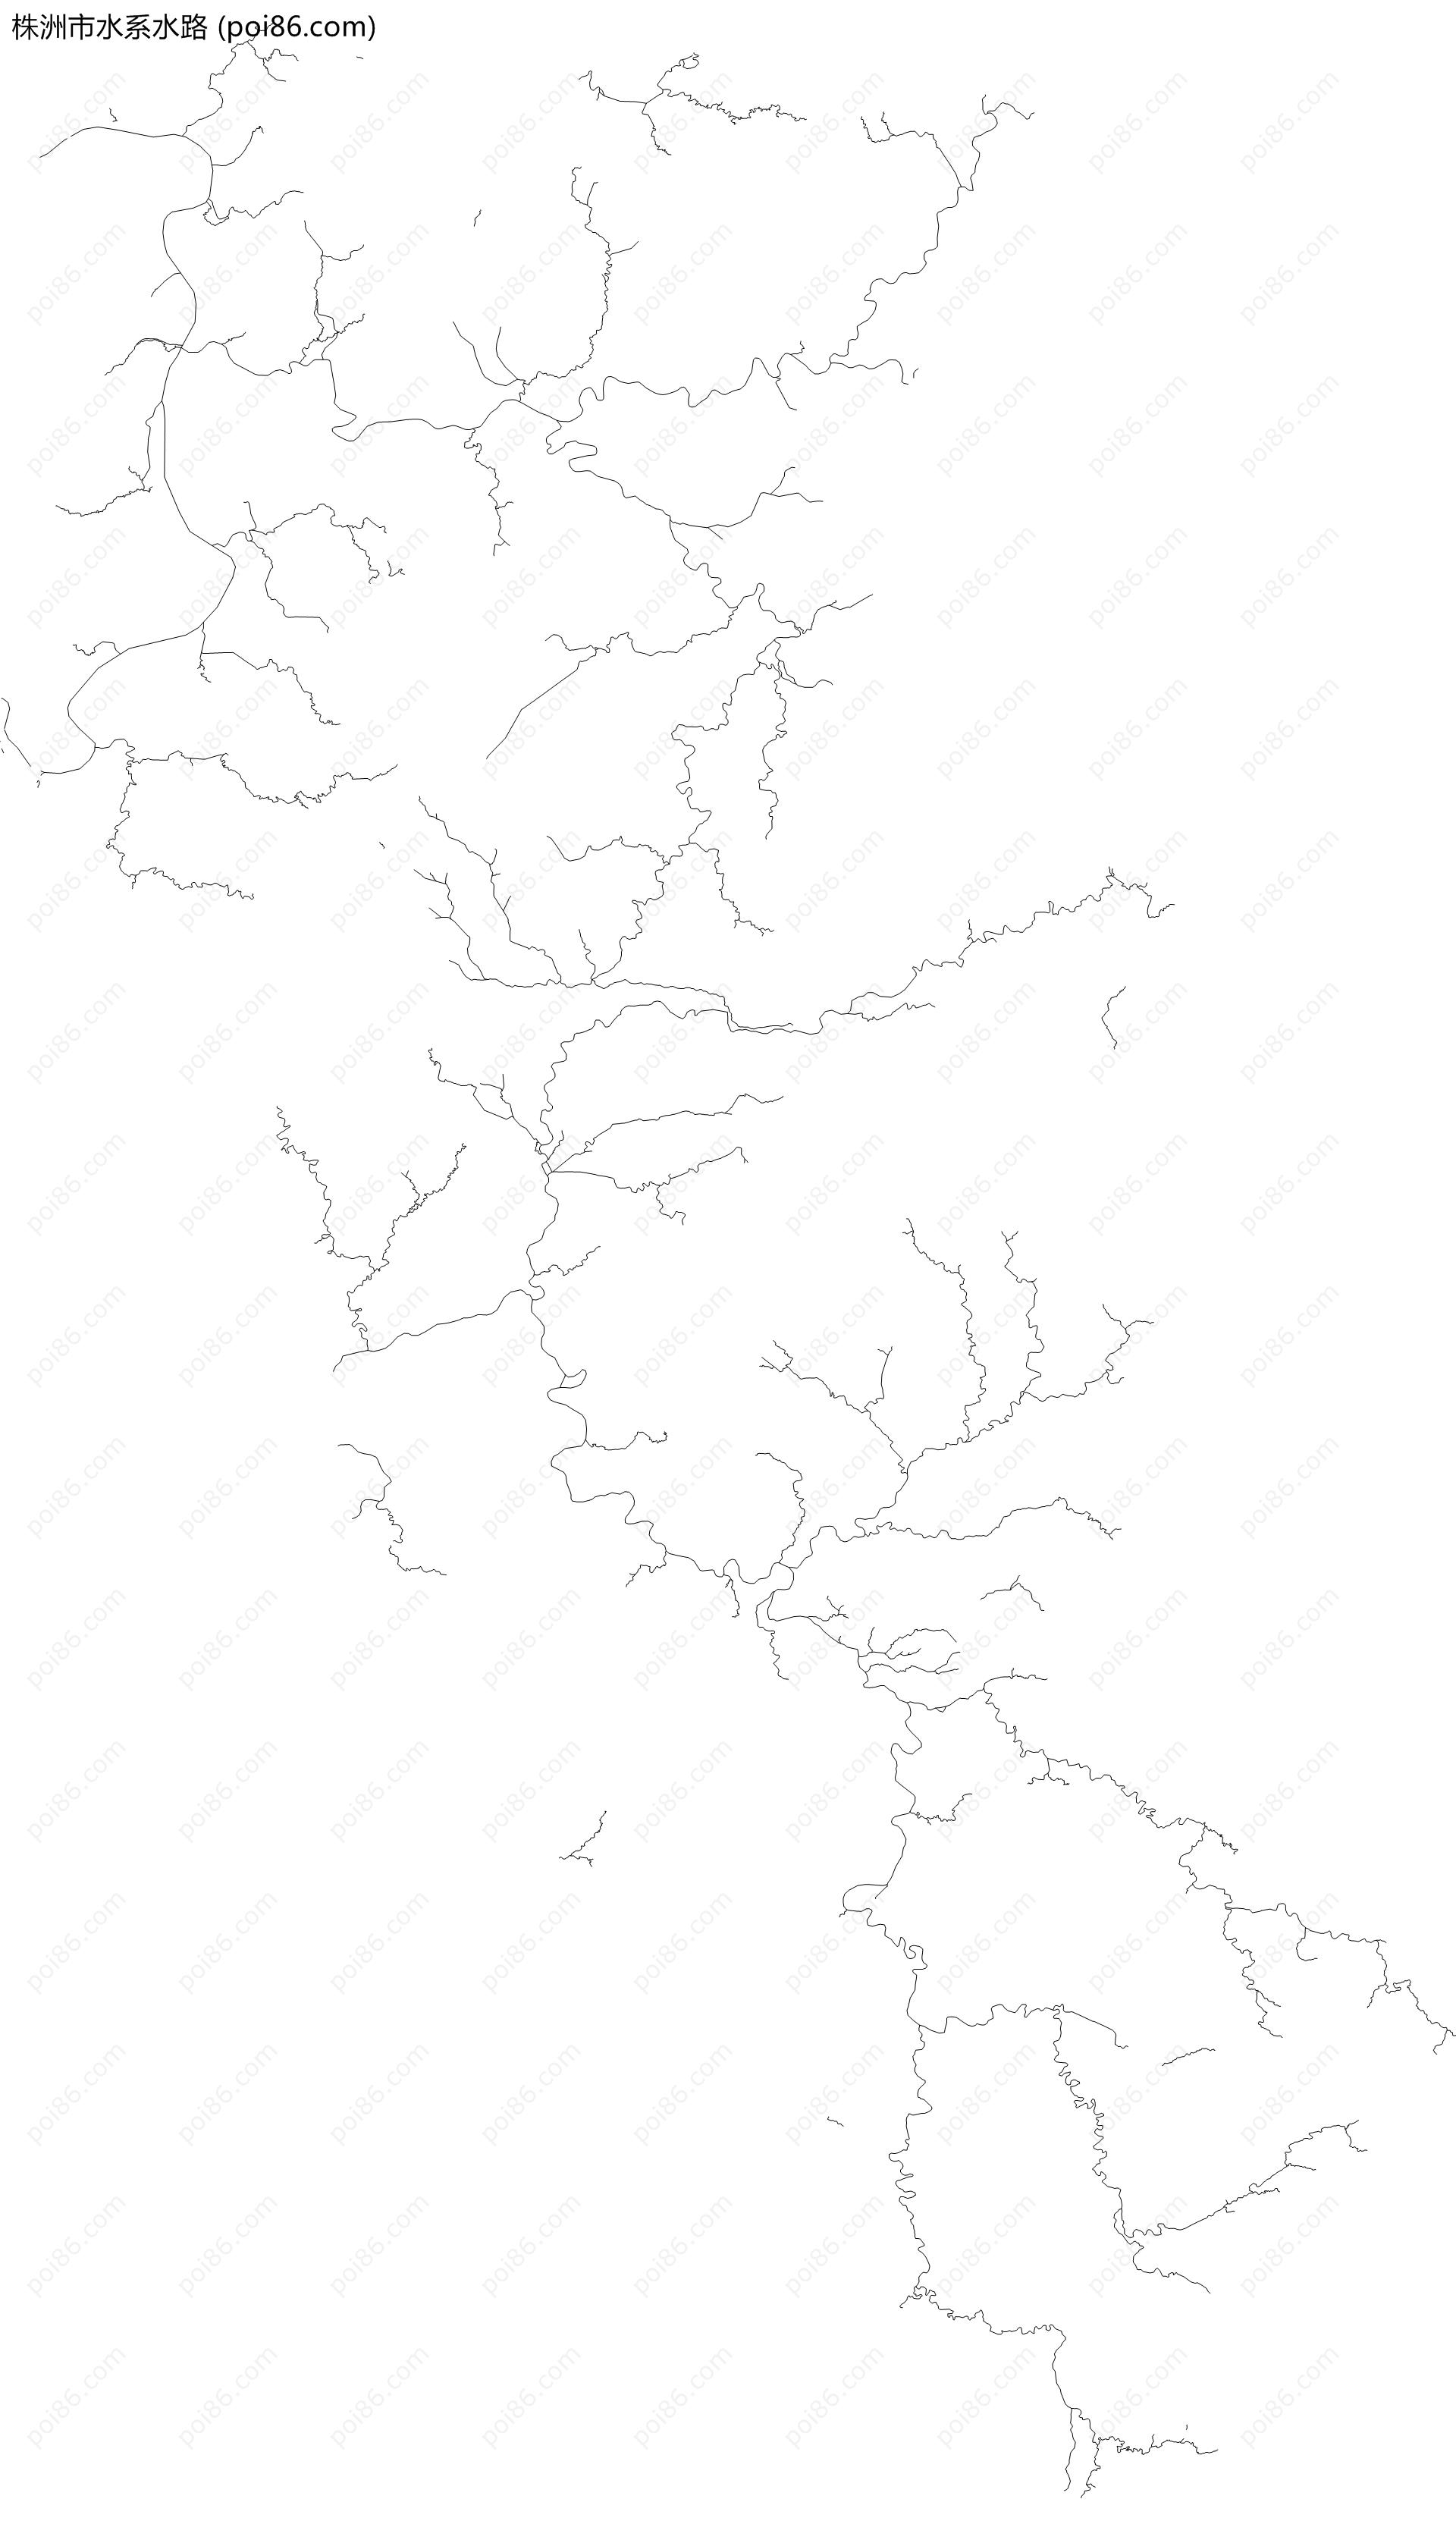 株洲市水系水路地图